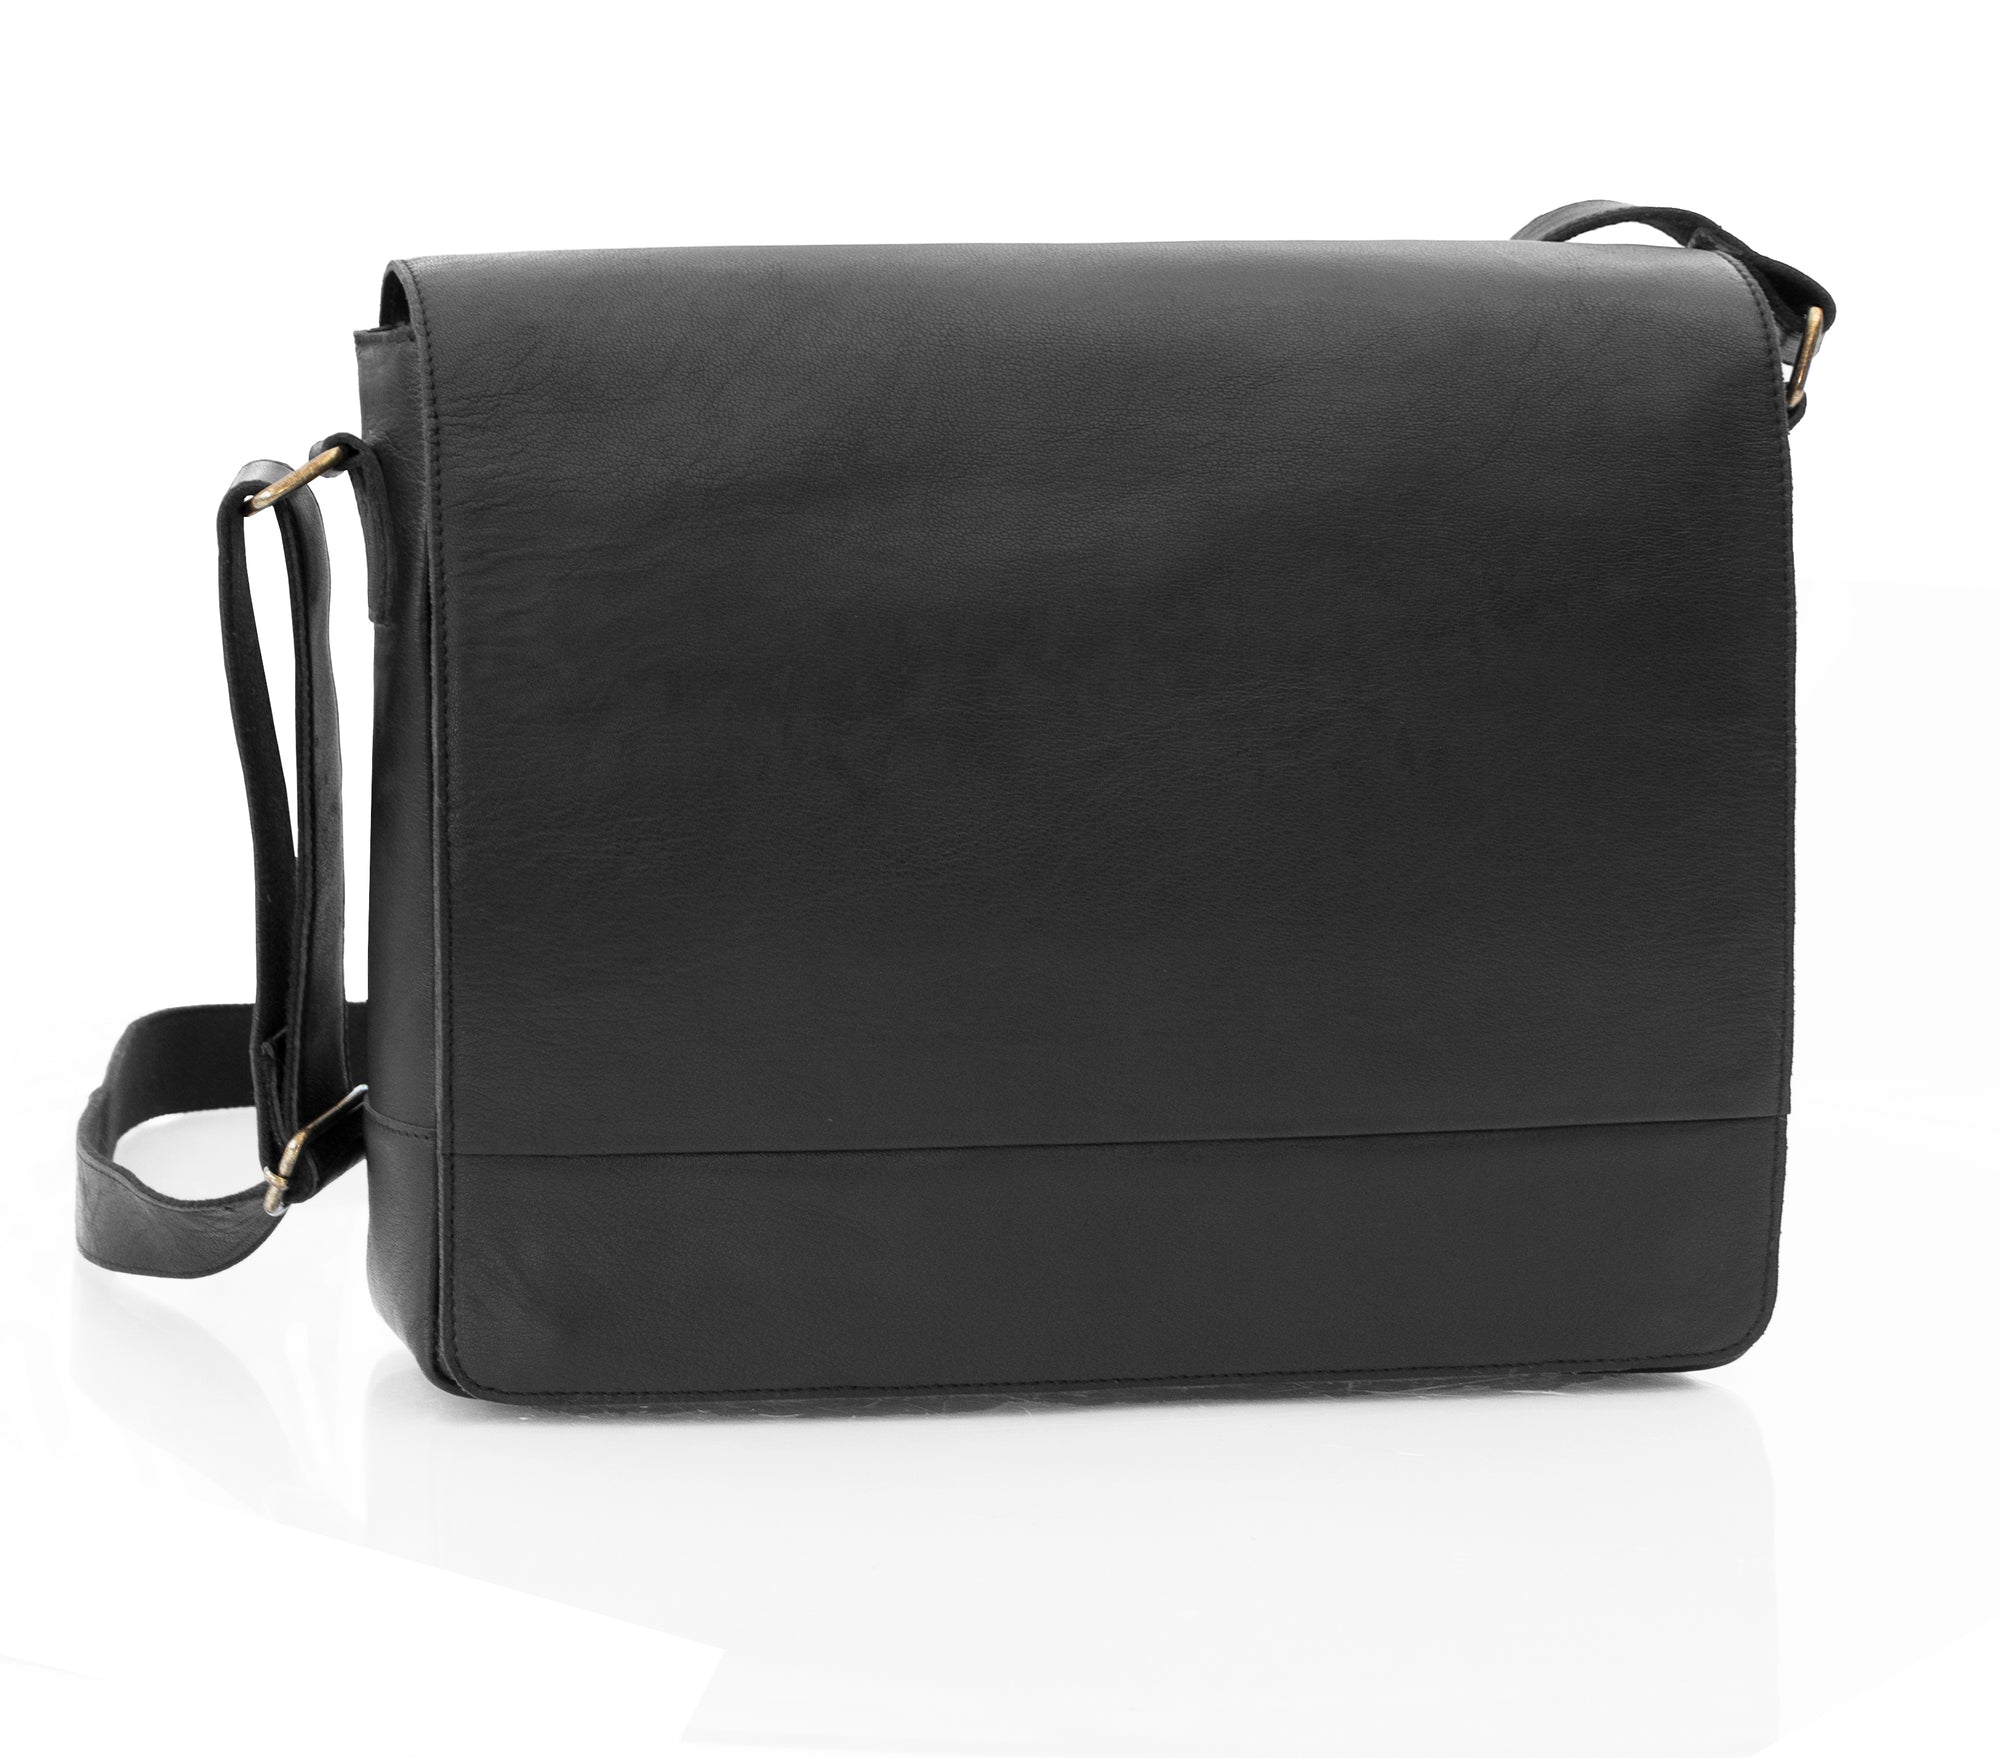 Rica Large Black Leather Messenger Bag - 1566